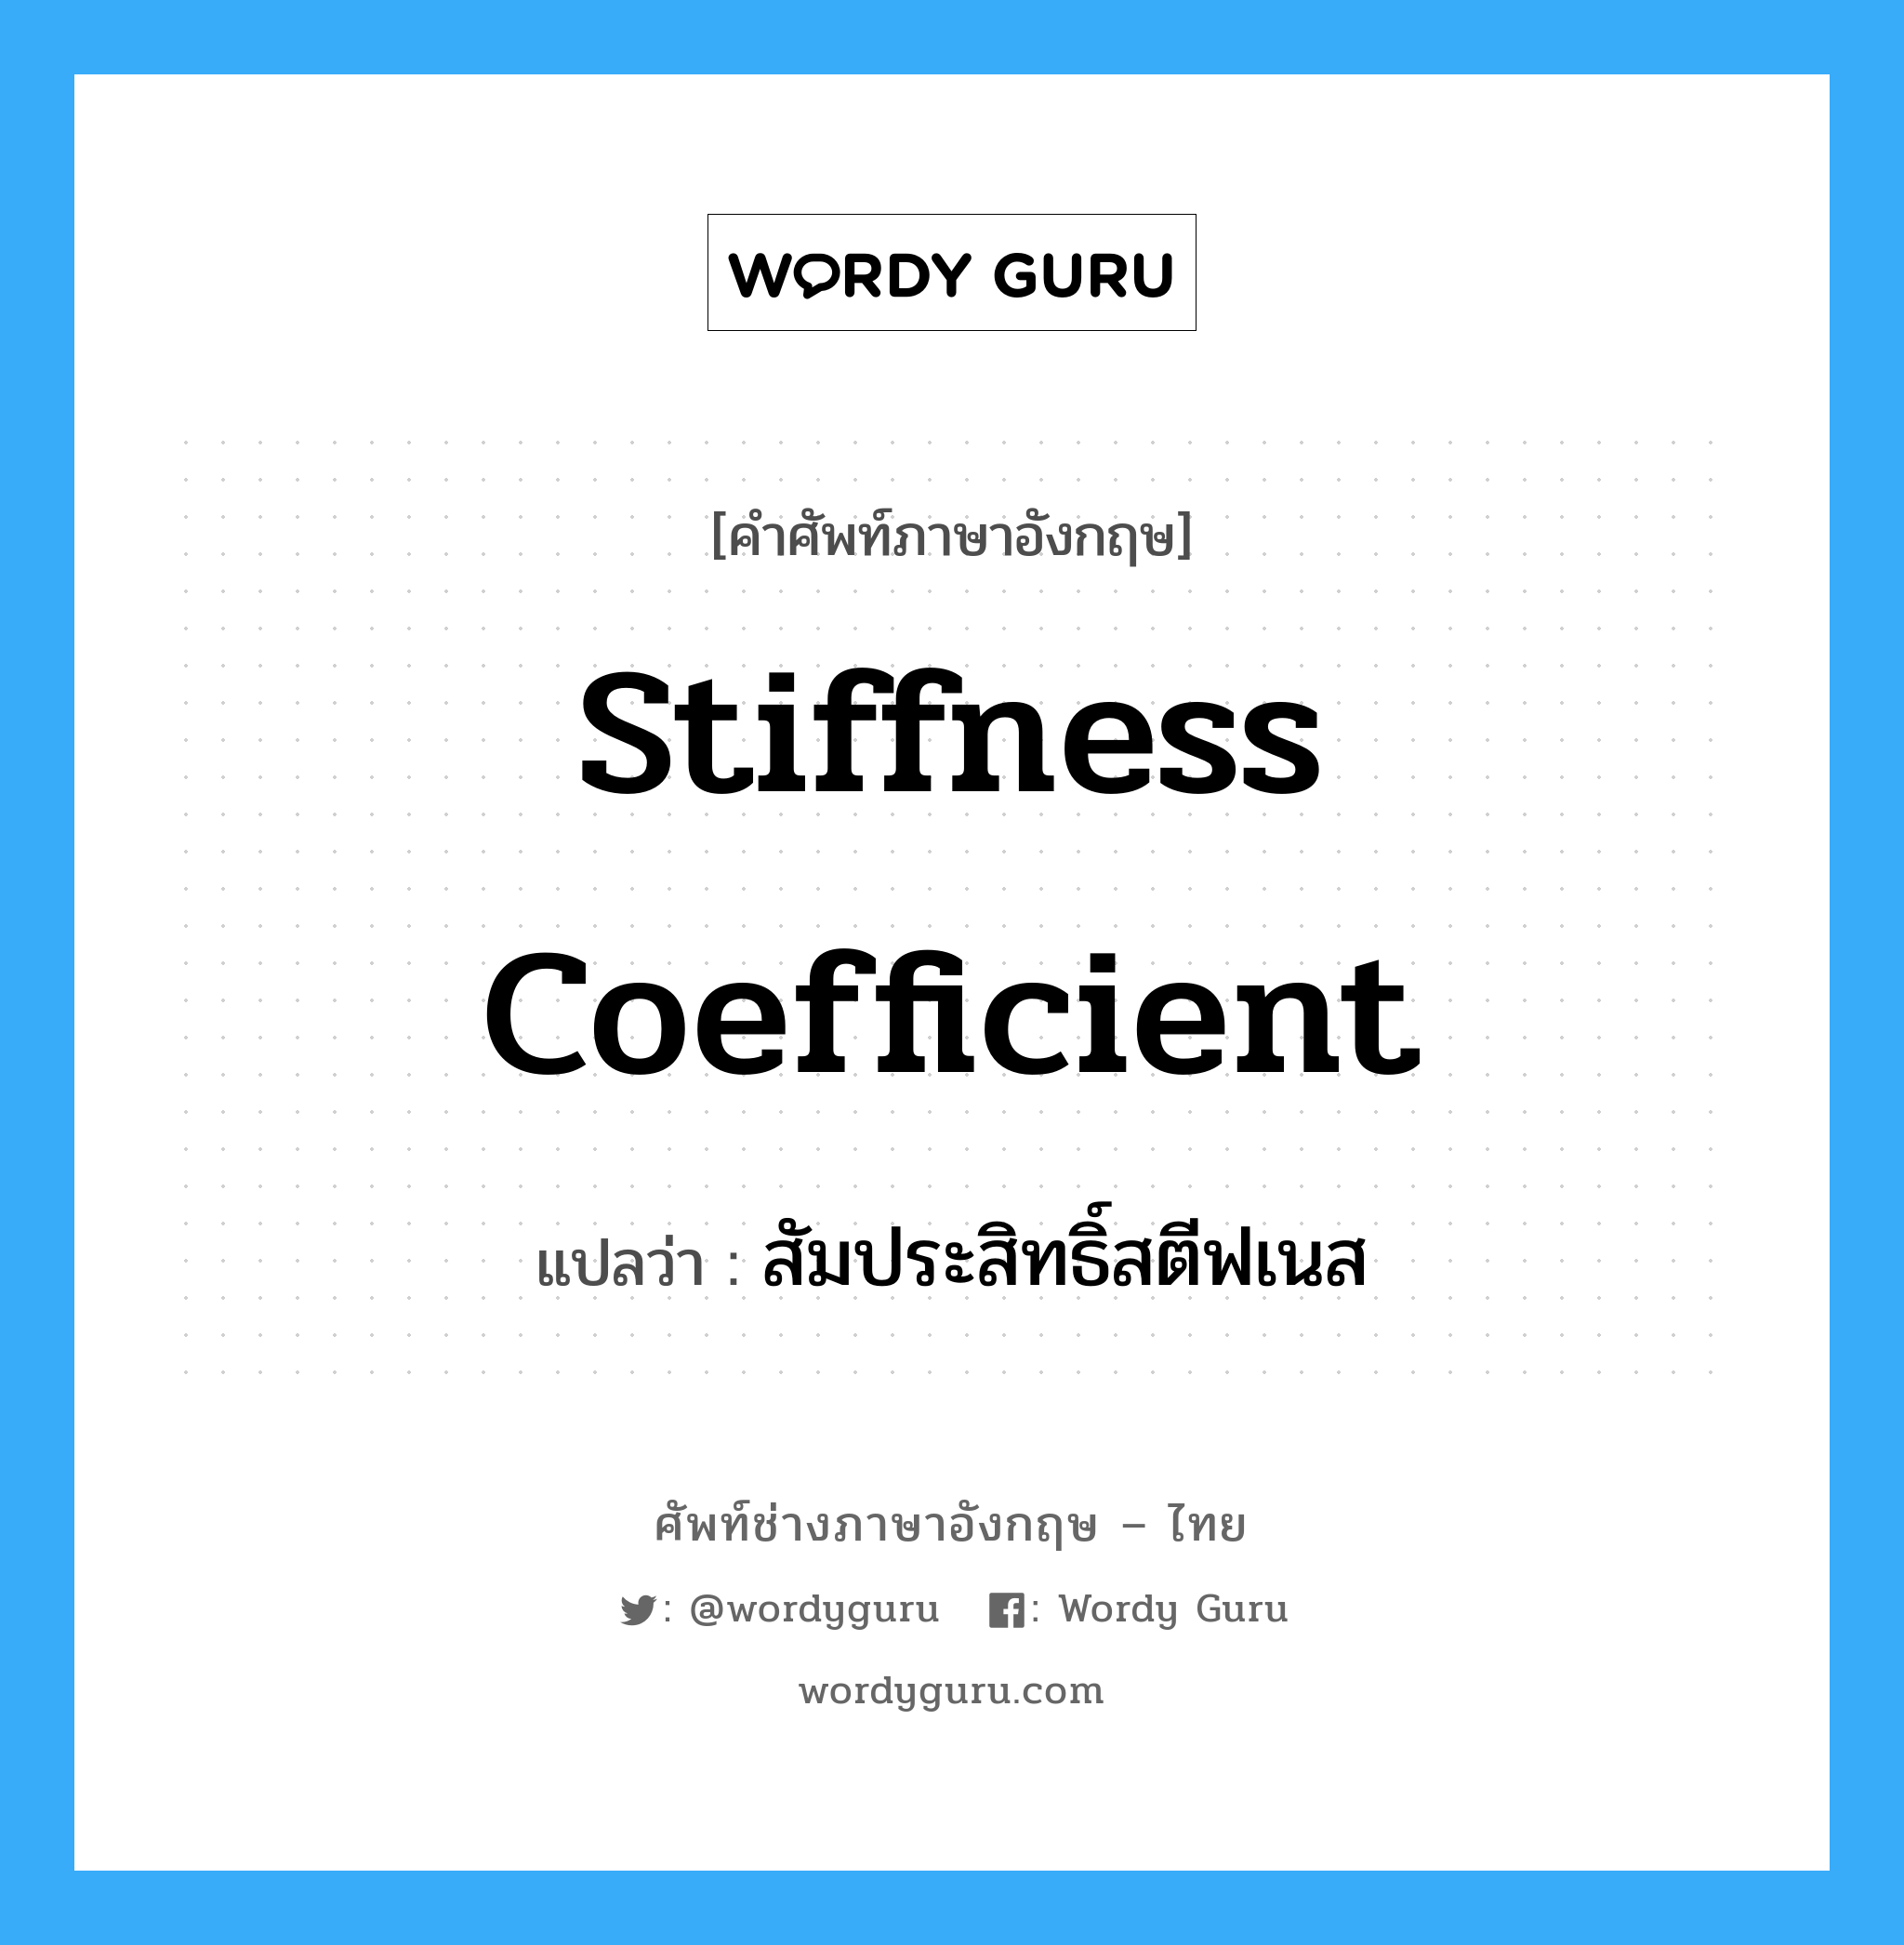 สัมประสิทธิ์สตีฟเนส ภาษาอังกฤษ?, คำศัพท์ช่างภาษาอังกฤษ - ไทย สัมประสิทธิ์สตีฟเนส คำศัพท์ภาษาอังกฤษ สัมประสิทธิ์สตีฟเนส แปลว่า Stiffness Coefficient